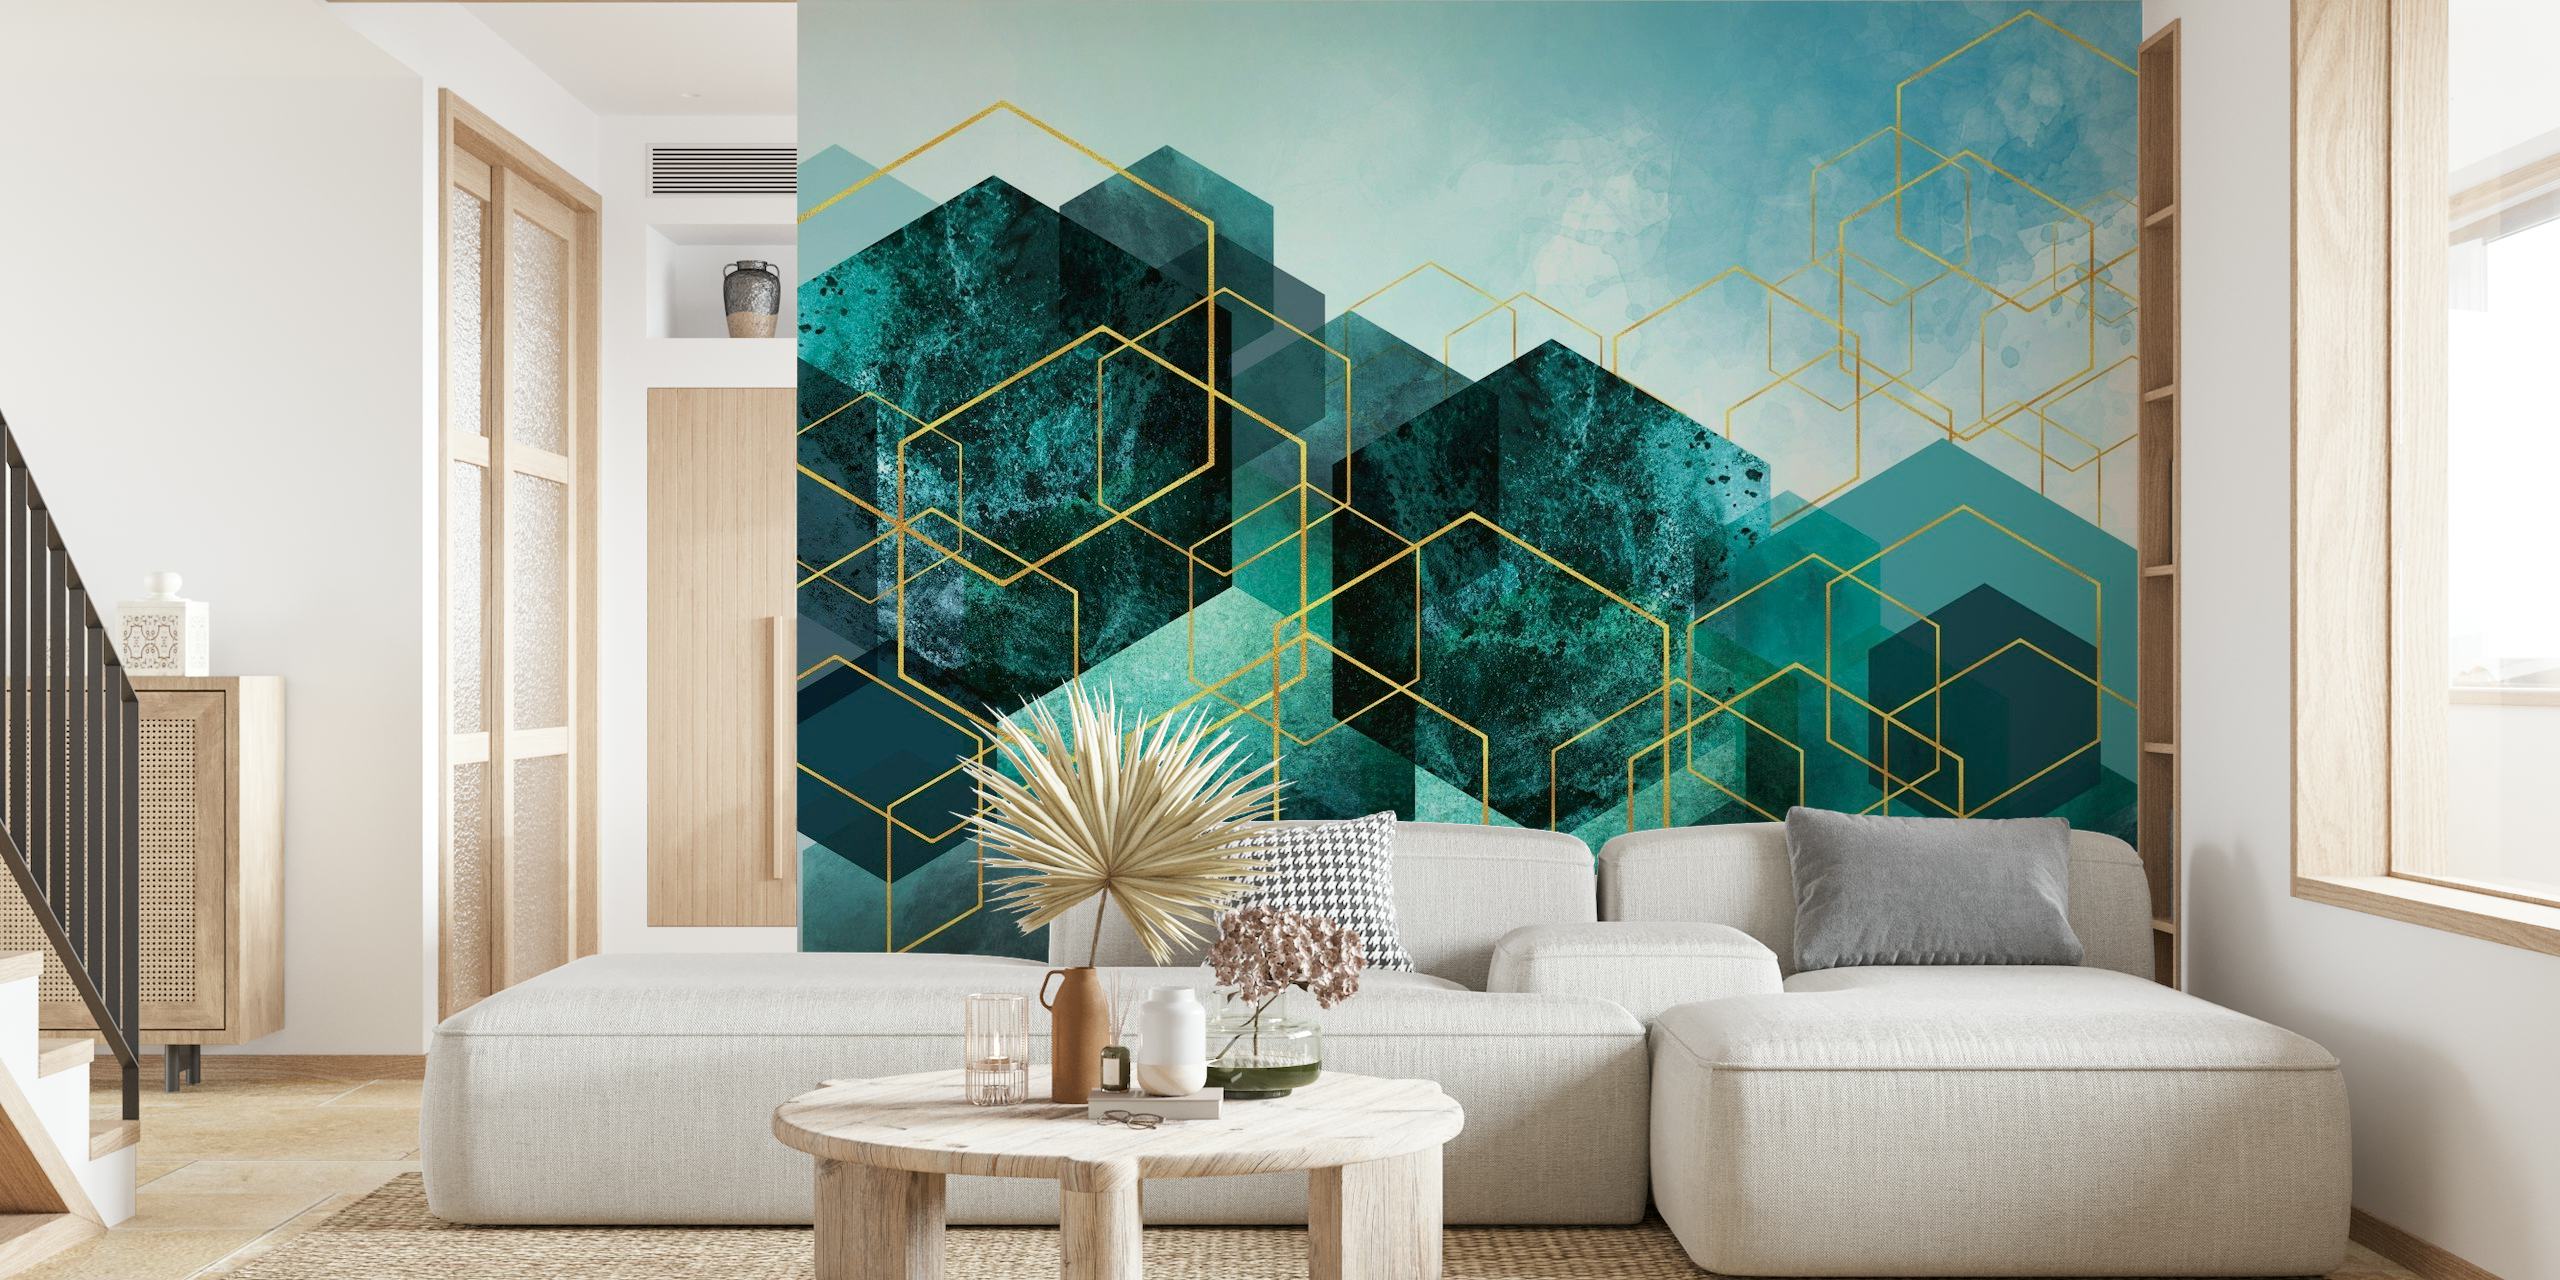 Apstraktni plavozeleni i zlatni geometrijski pejzažni zidni mural